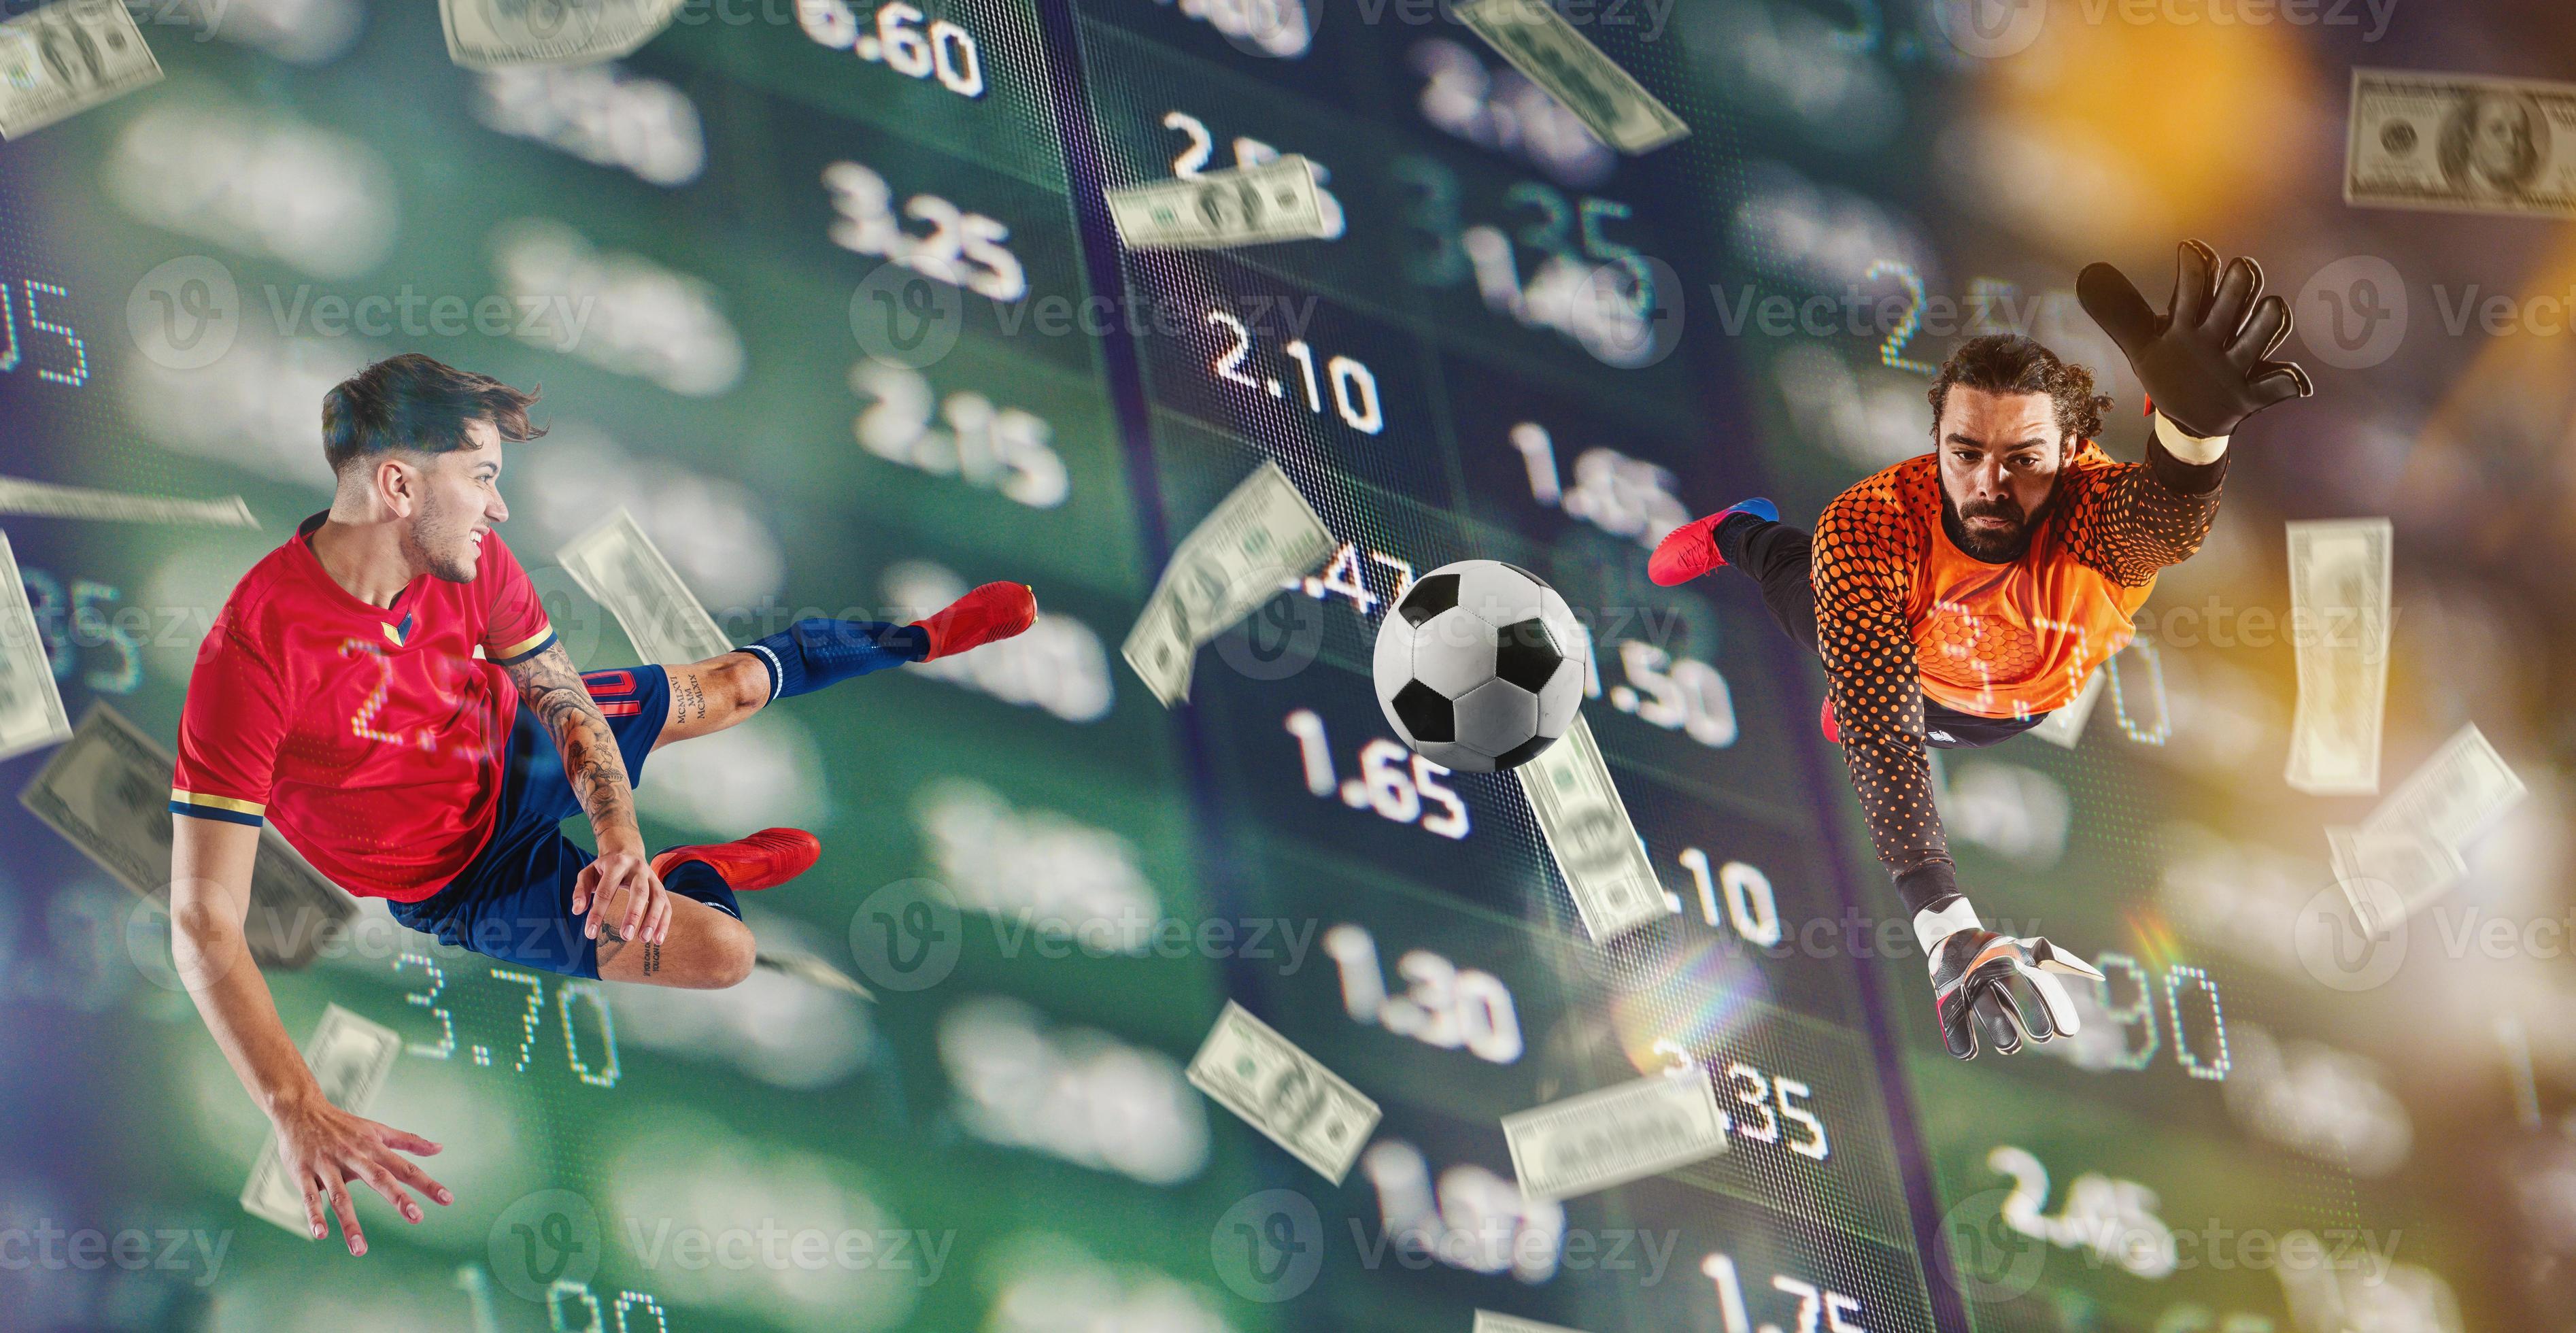 online Wette und Analytik und Statistiken zum Fußball Spiel 20627240 Stock-Photo bei Vecteezy